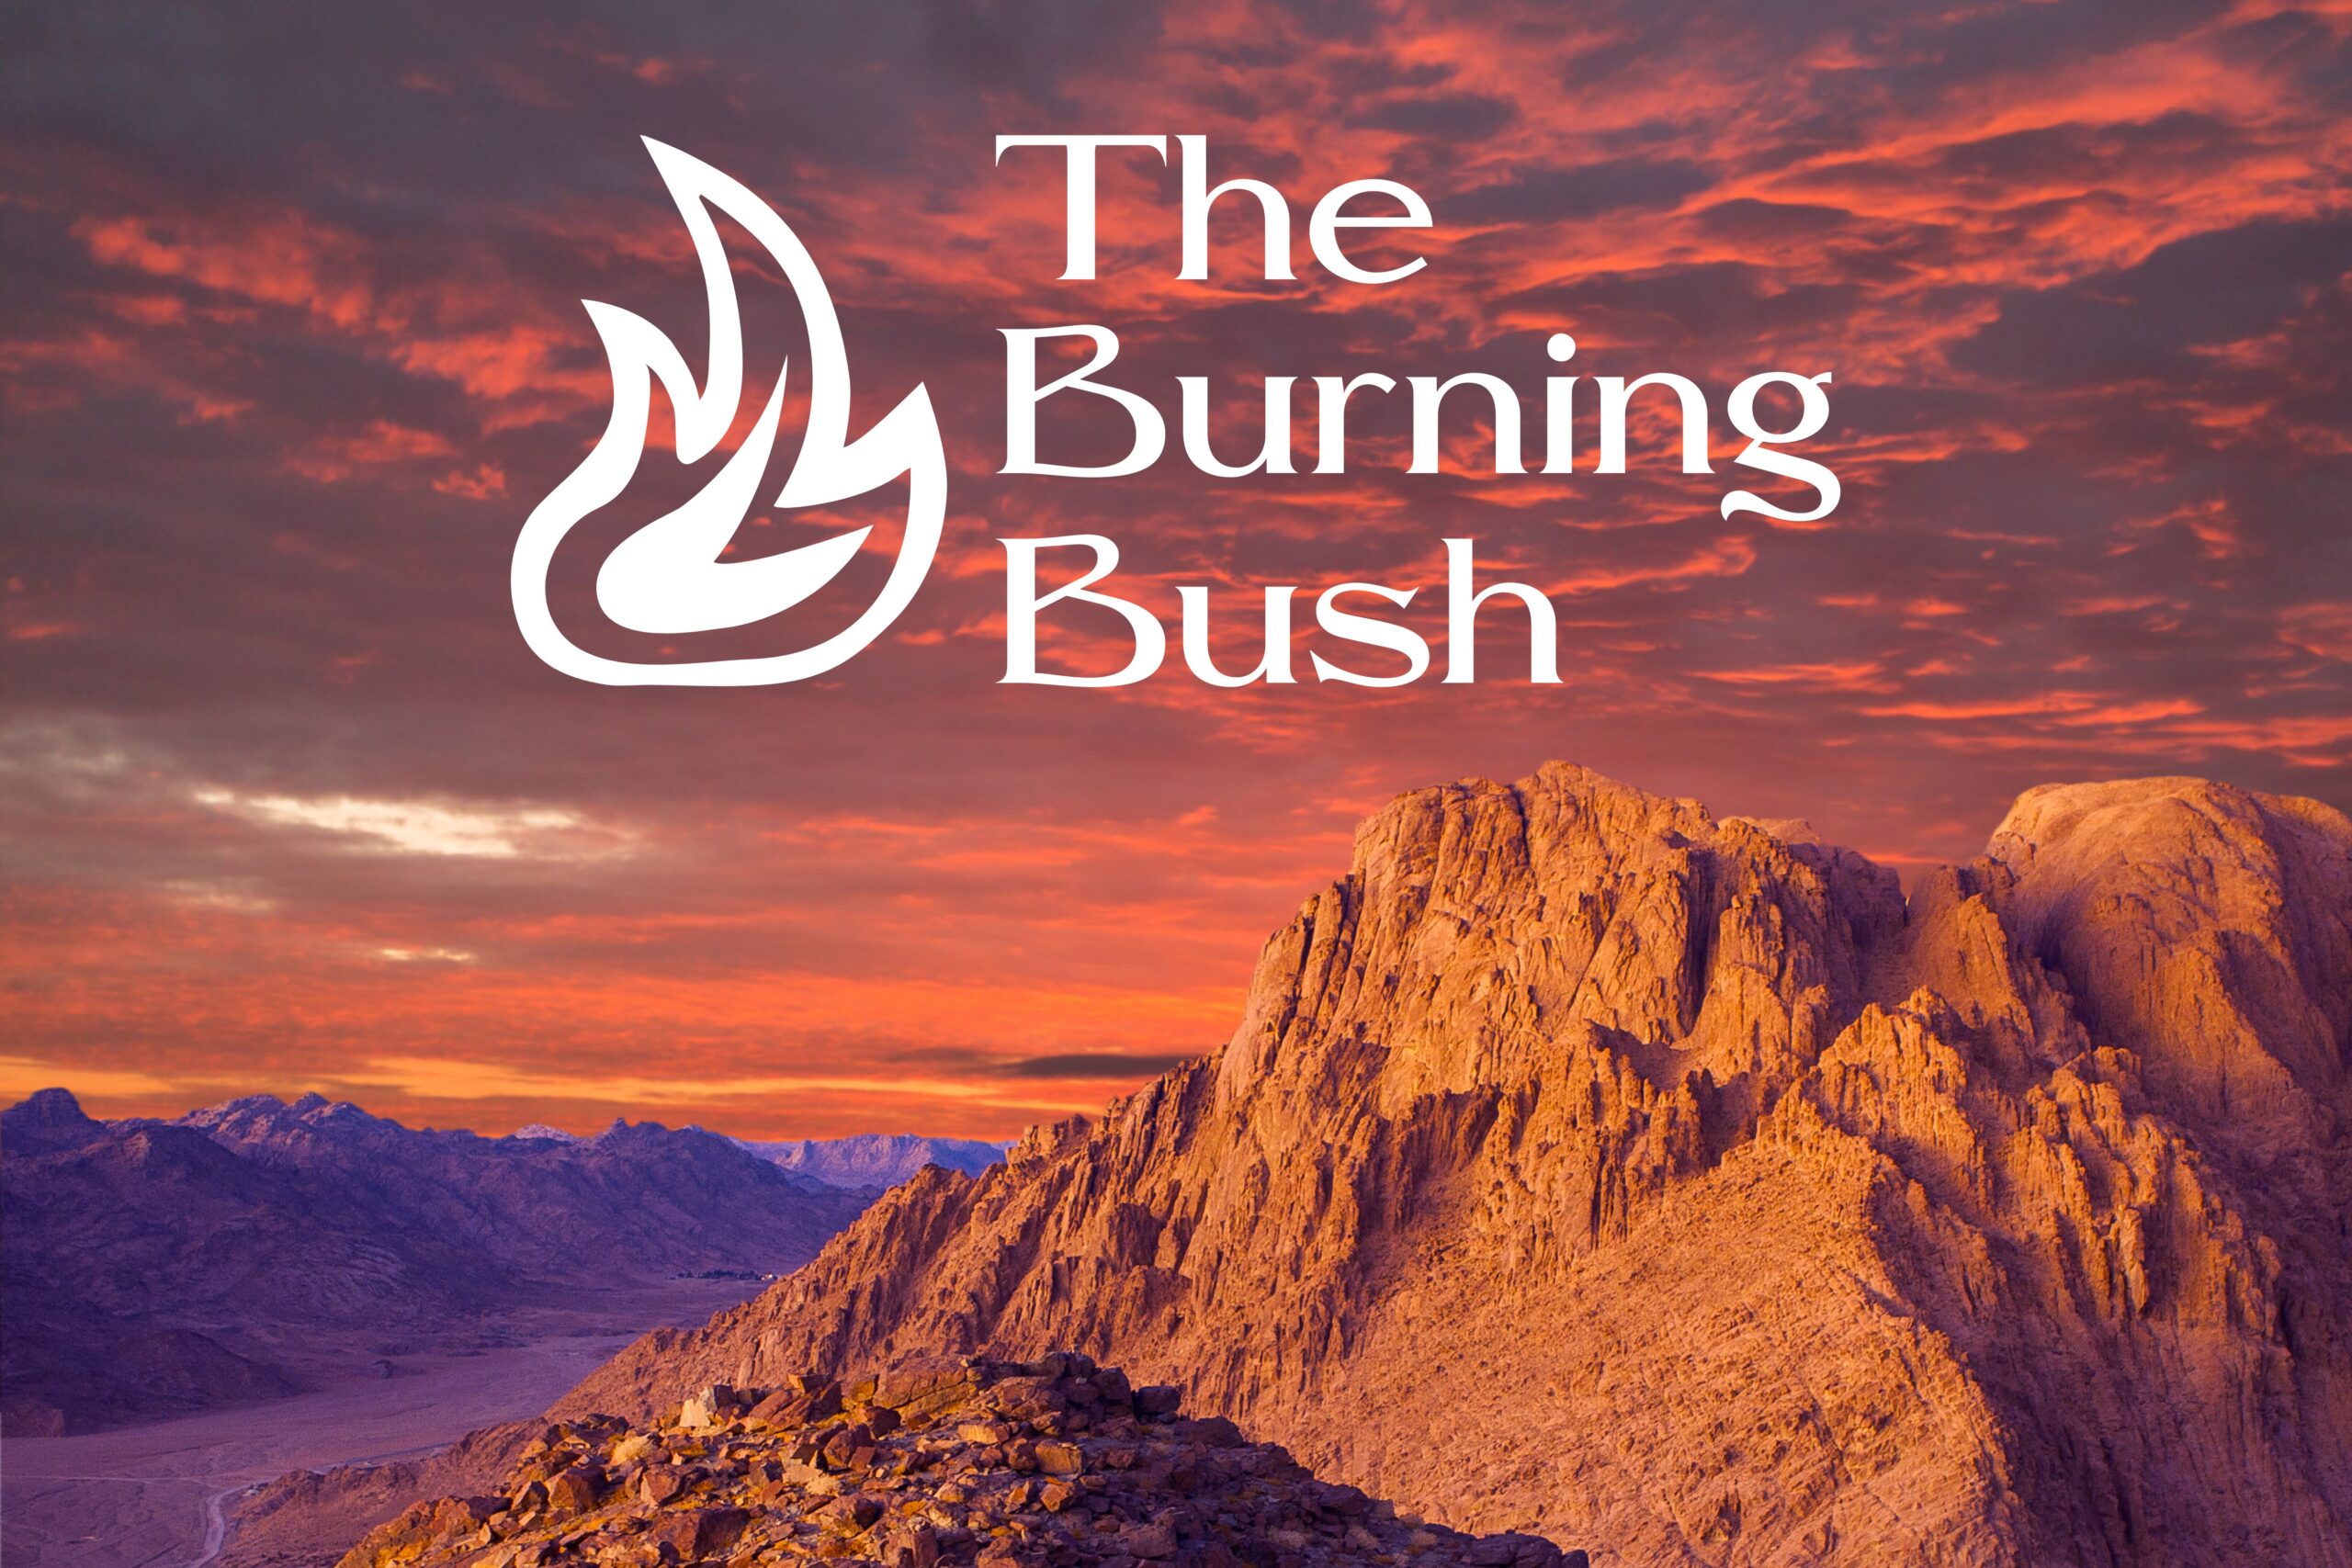 Back to Sunday School: The Burning Bush